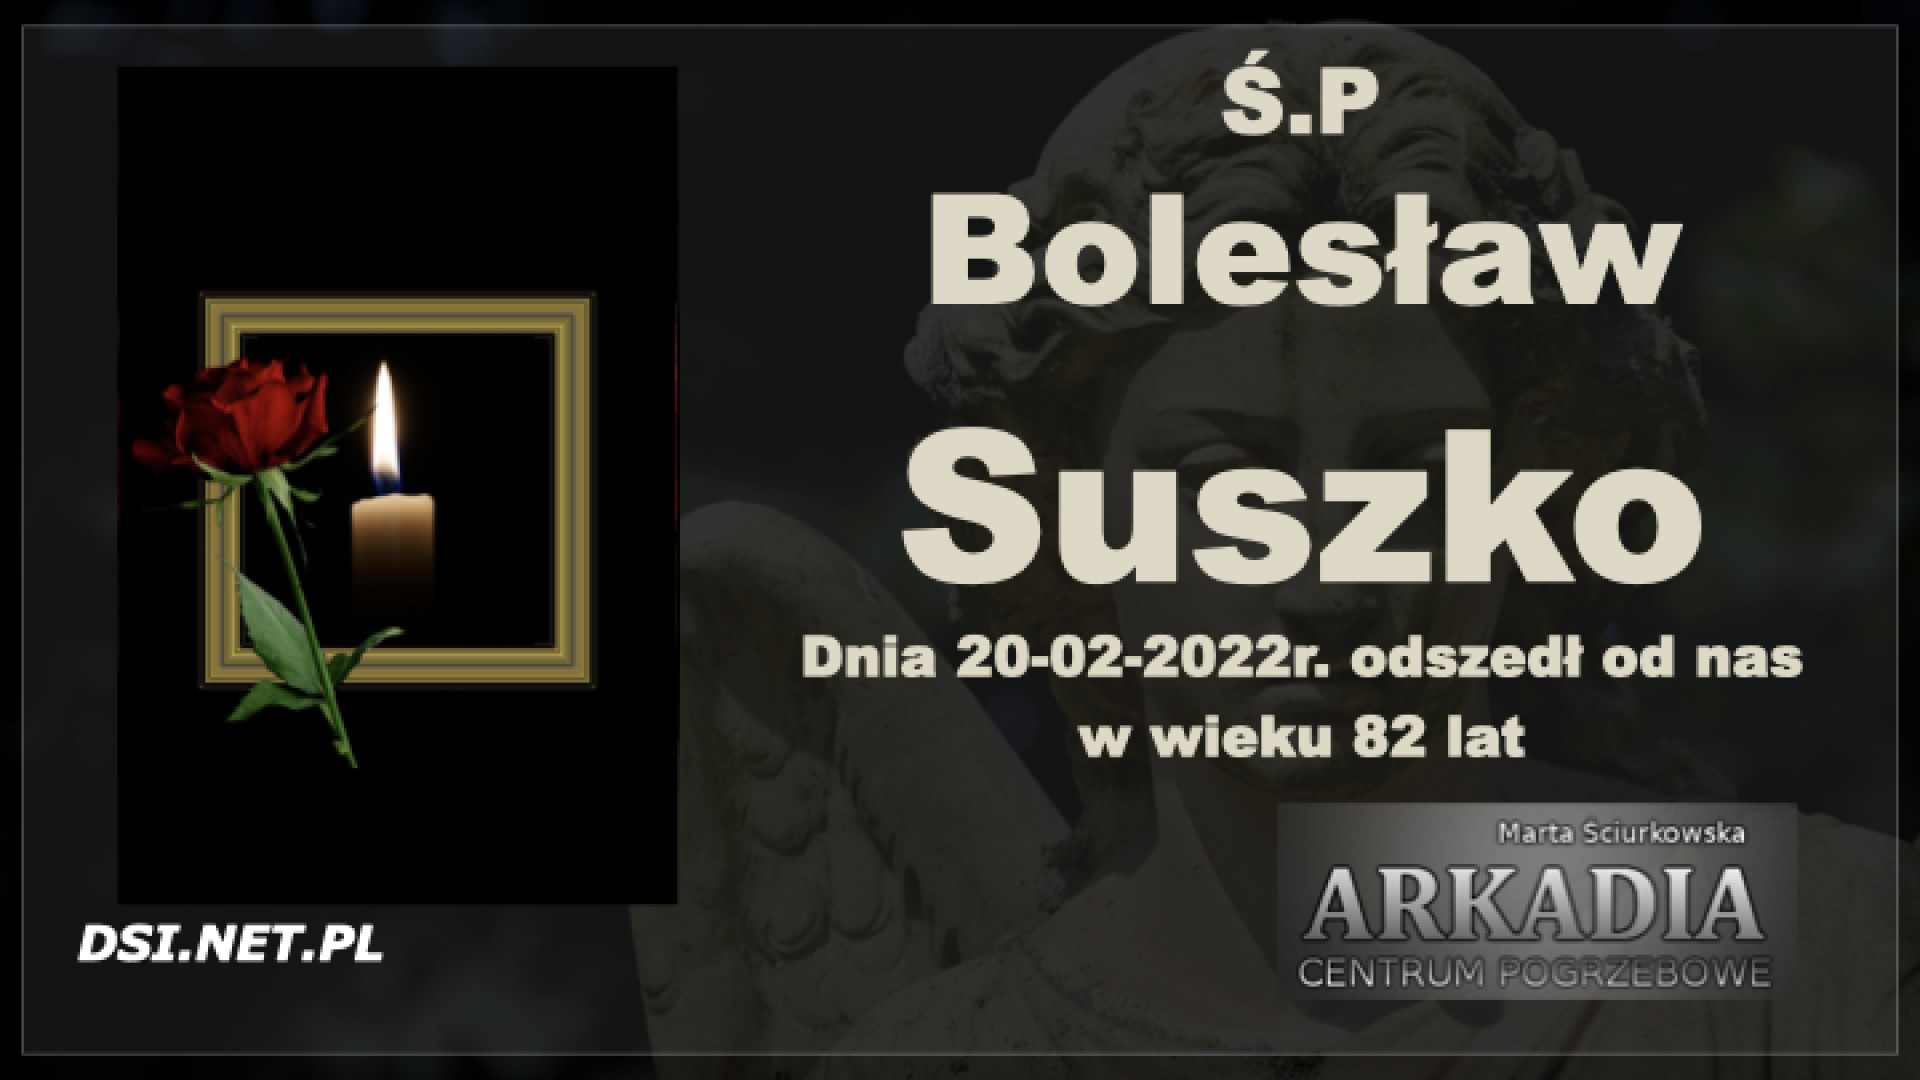 Ś.P. Bolesław Suszko